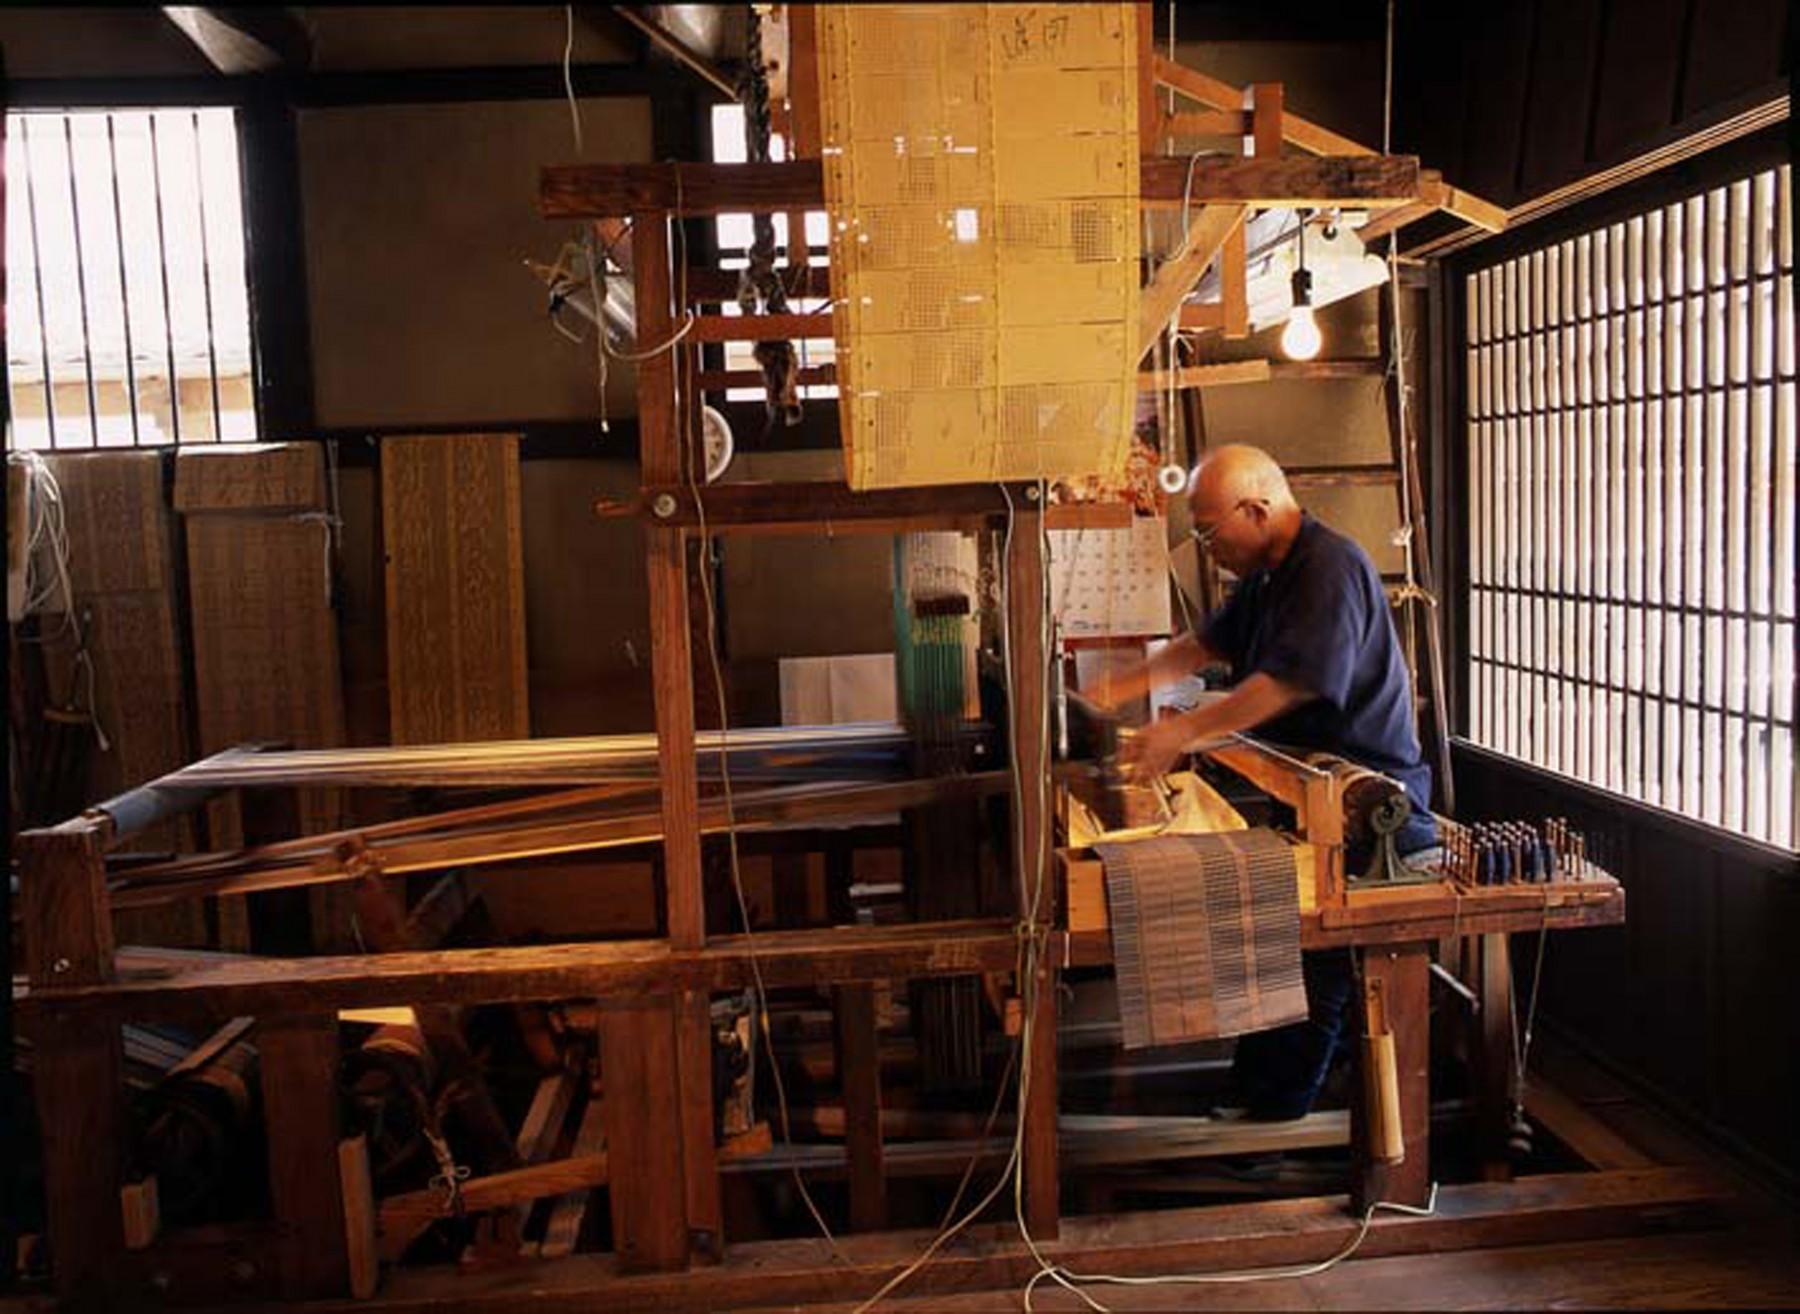 ふるさと館・手織りによる博多織の実演(撮影年不明)の画像